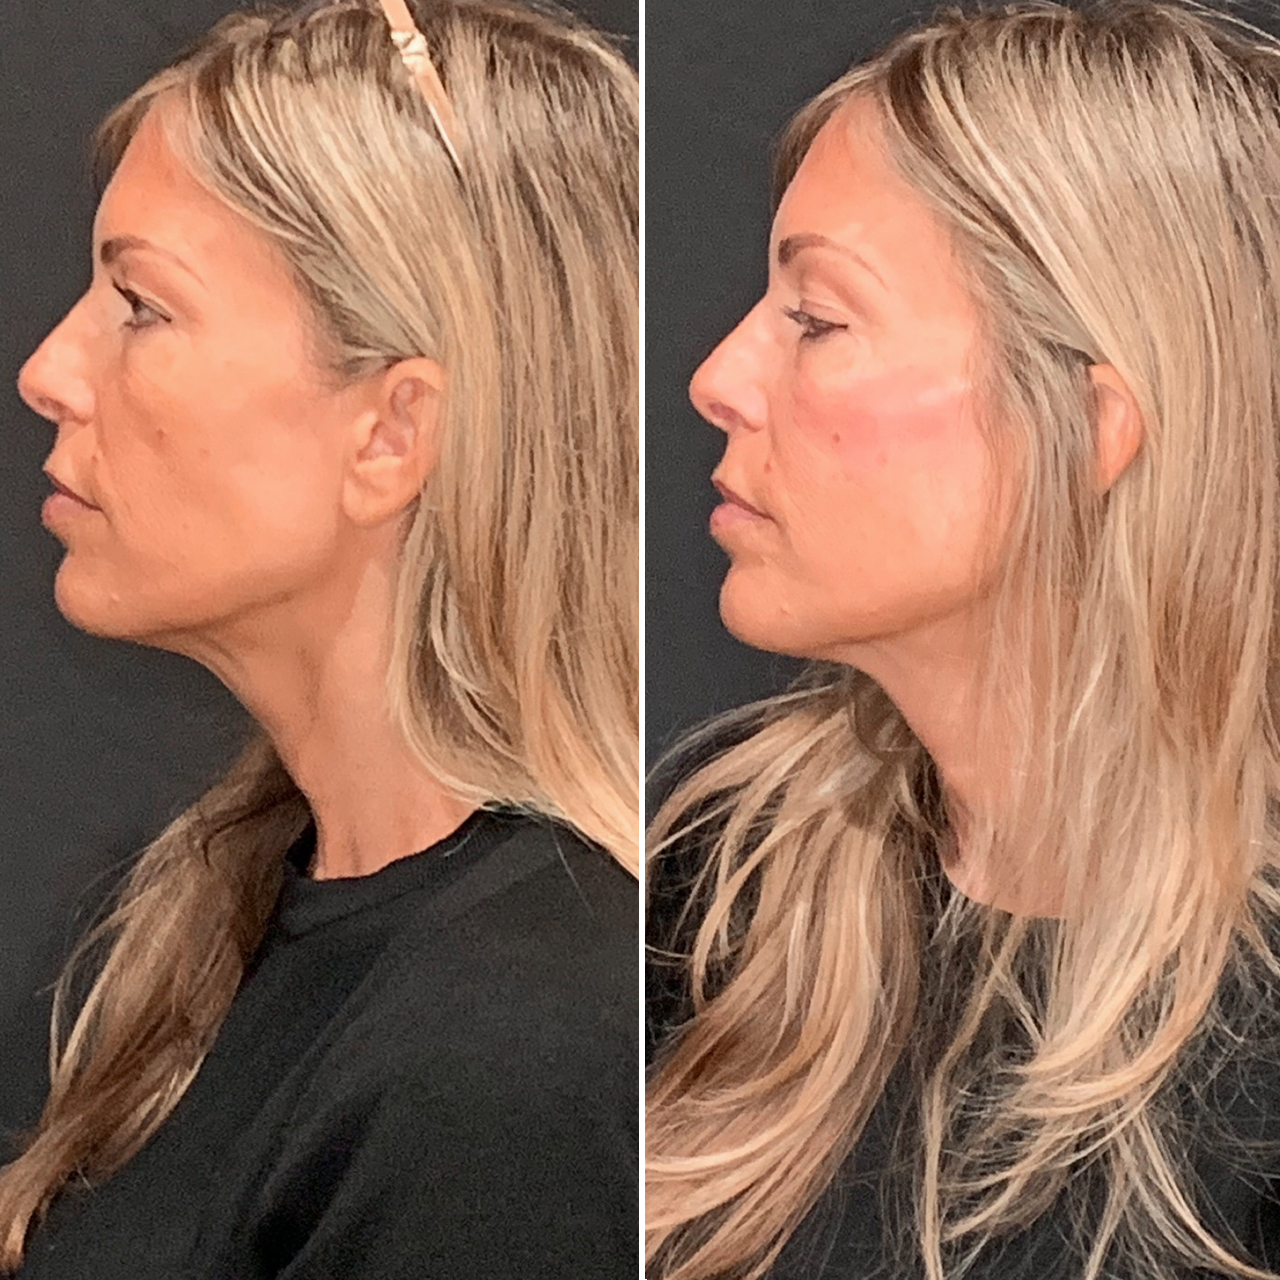 Skin Rejuvenation Results Image 2